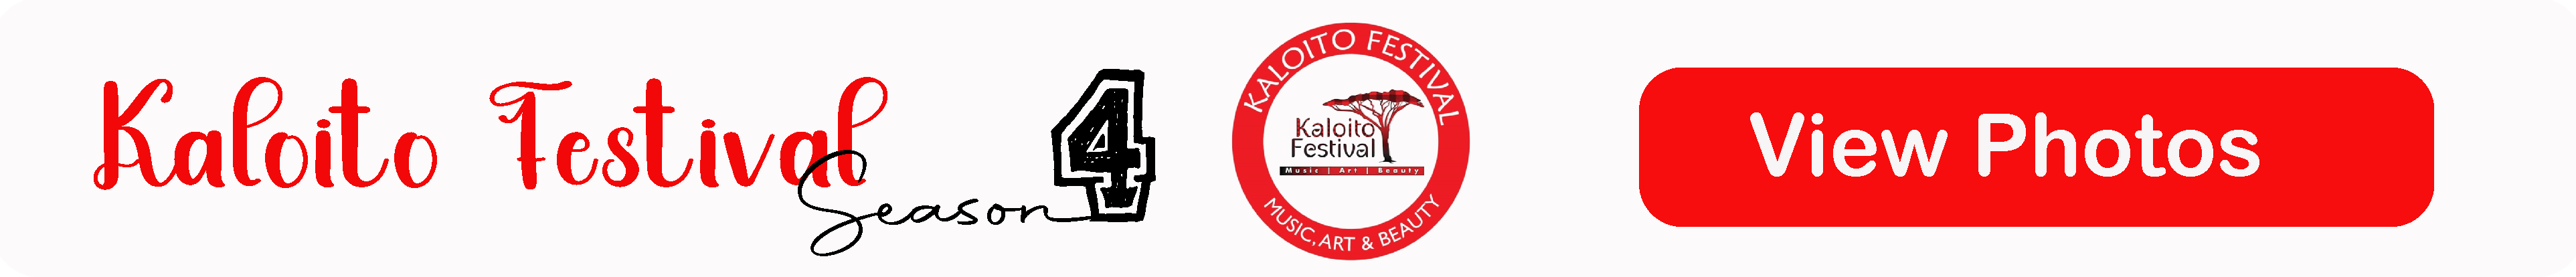 Kaloito Festival, Kaloito Season 4